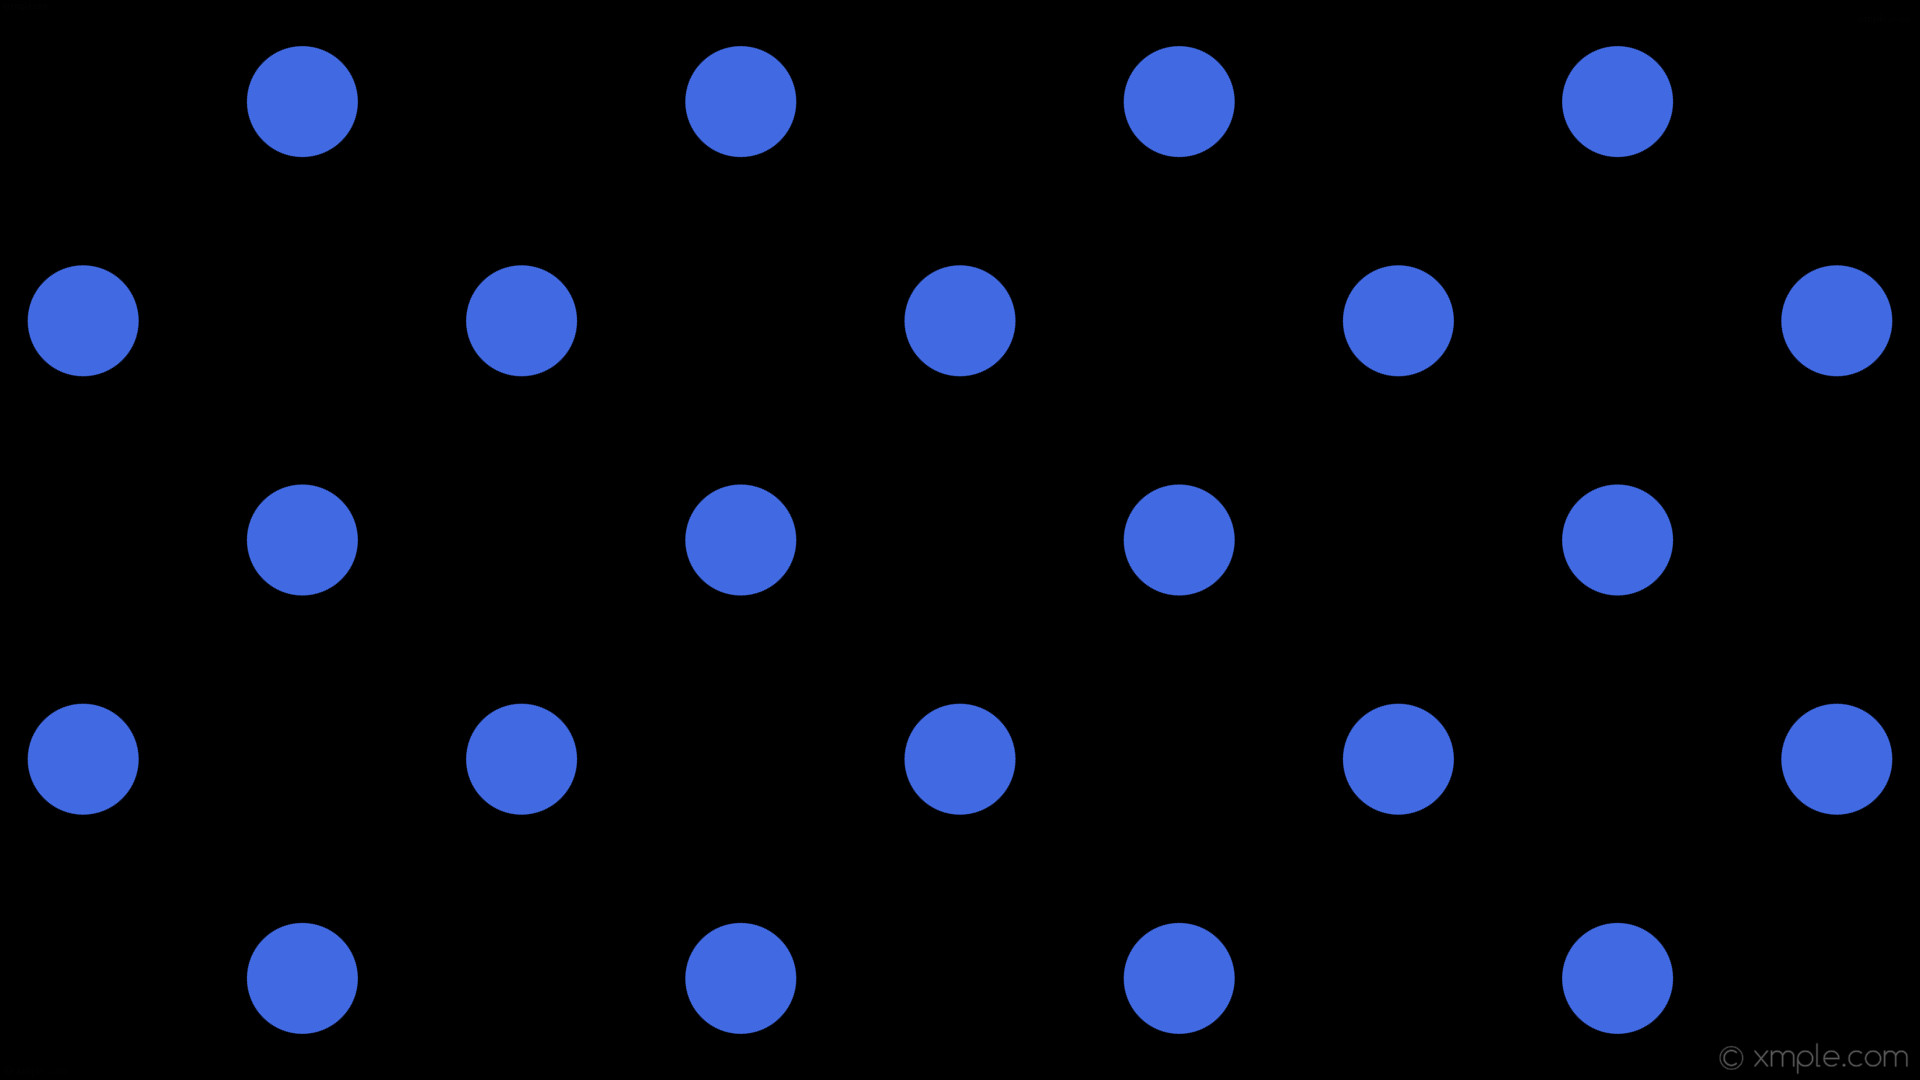 1920x1080 wallpaper blue black spots polka dots royal blue #000000 #4169e1 45Â° 111px  310px